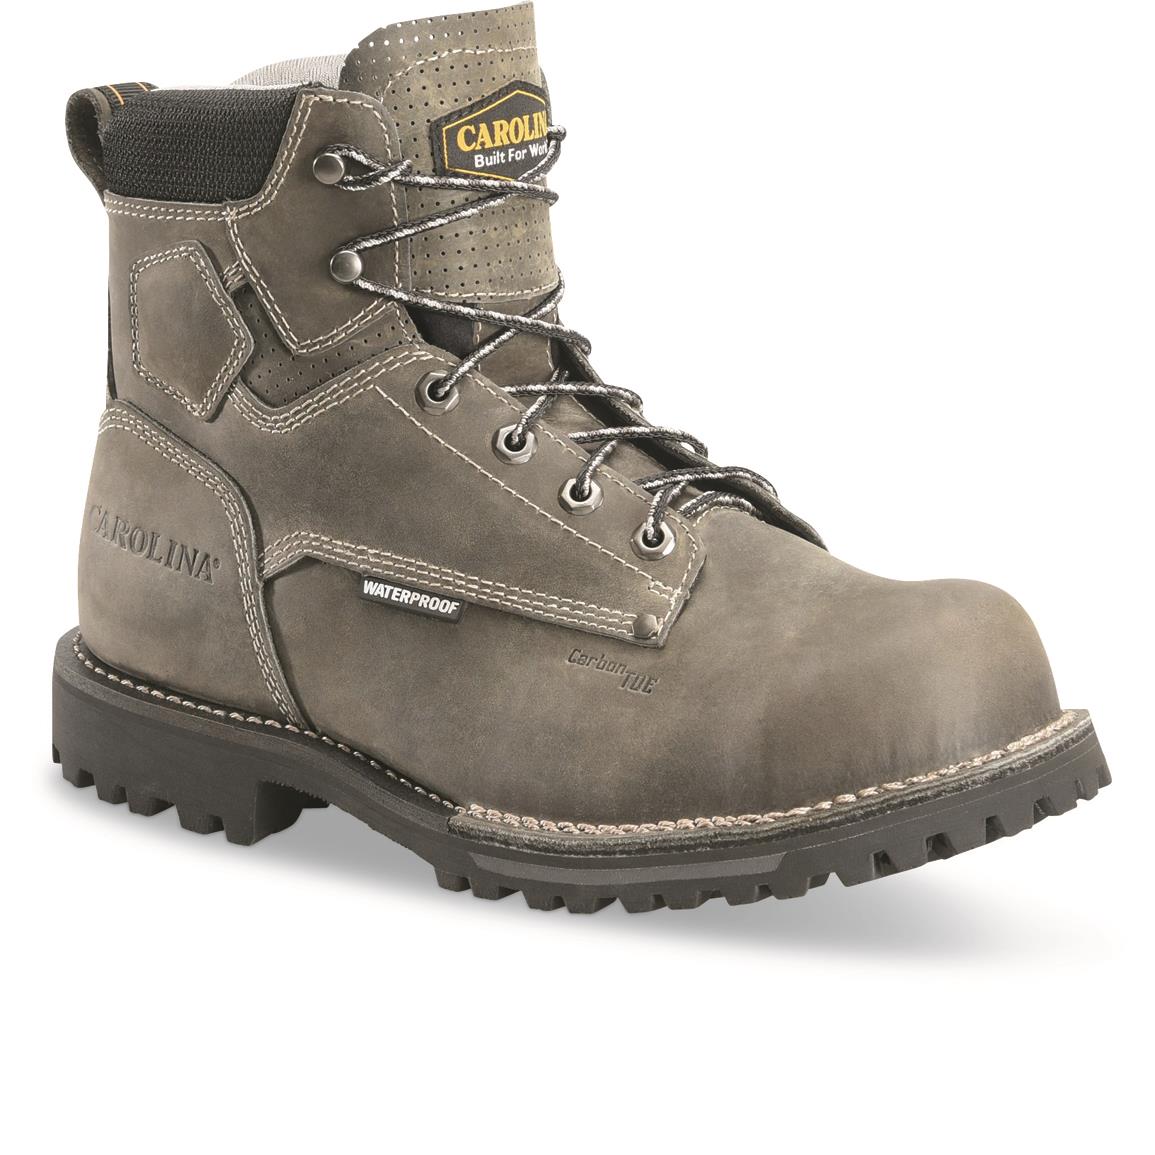 Carolina Men's Pitstop Lo Waterproof Composite Toe Work Boots, Gray